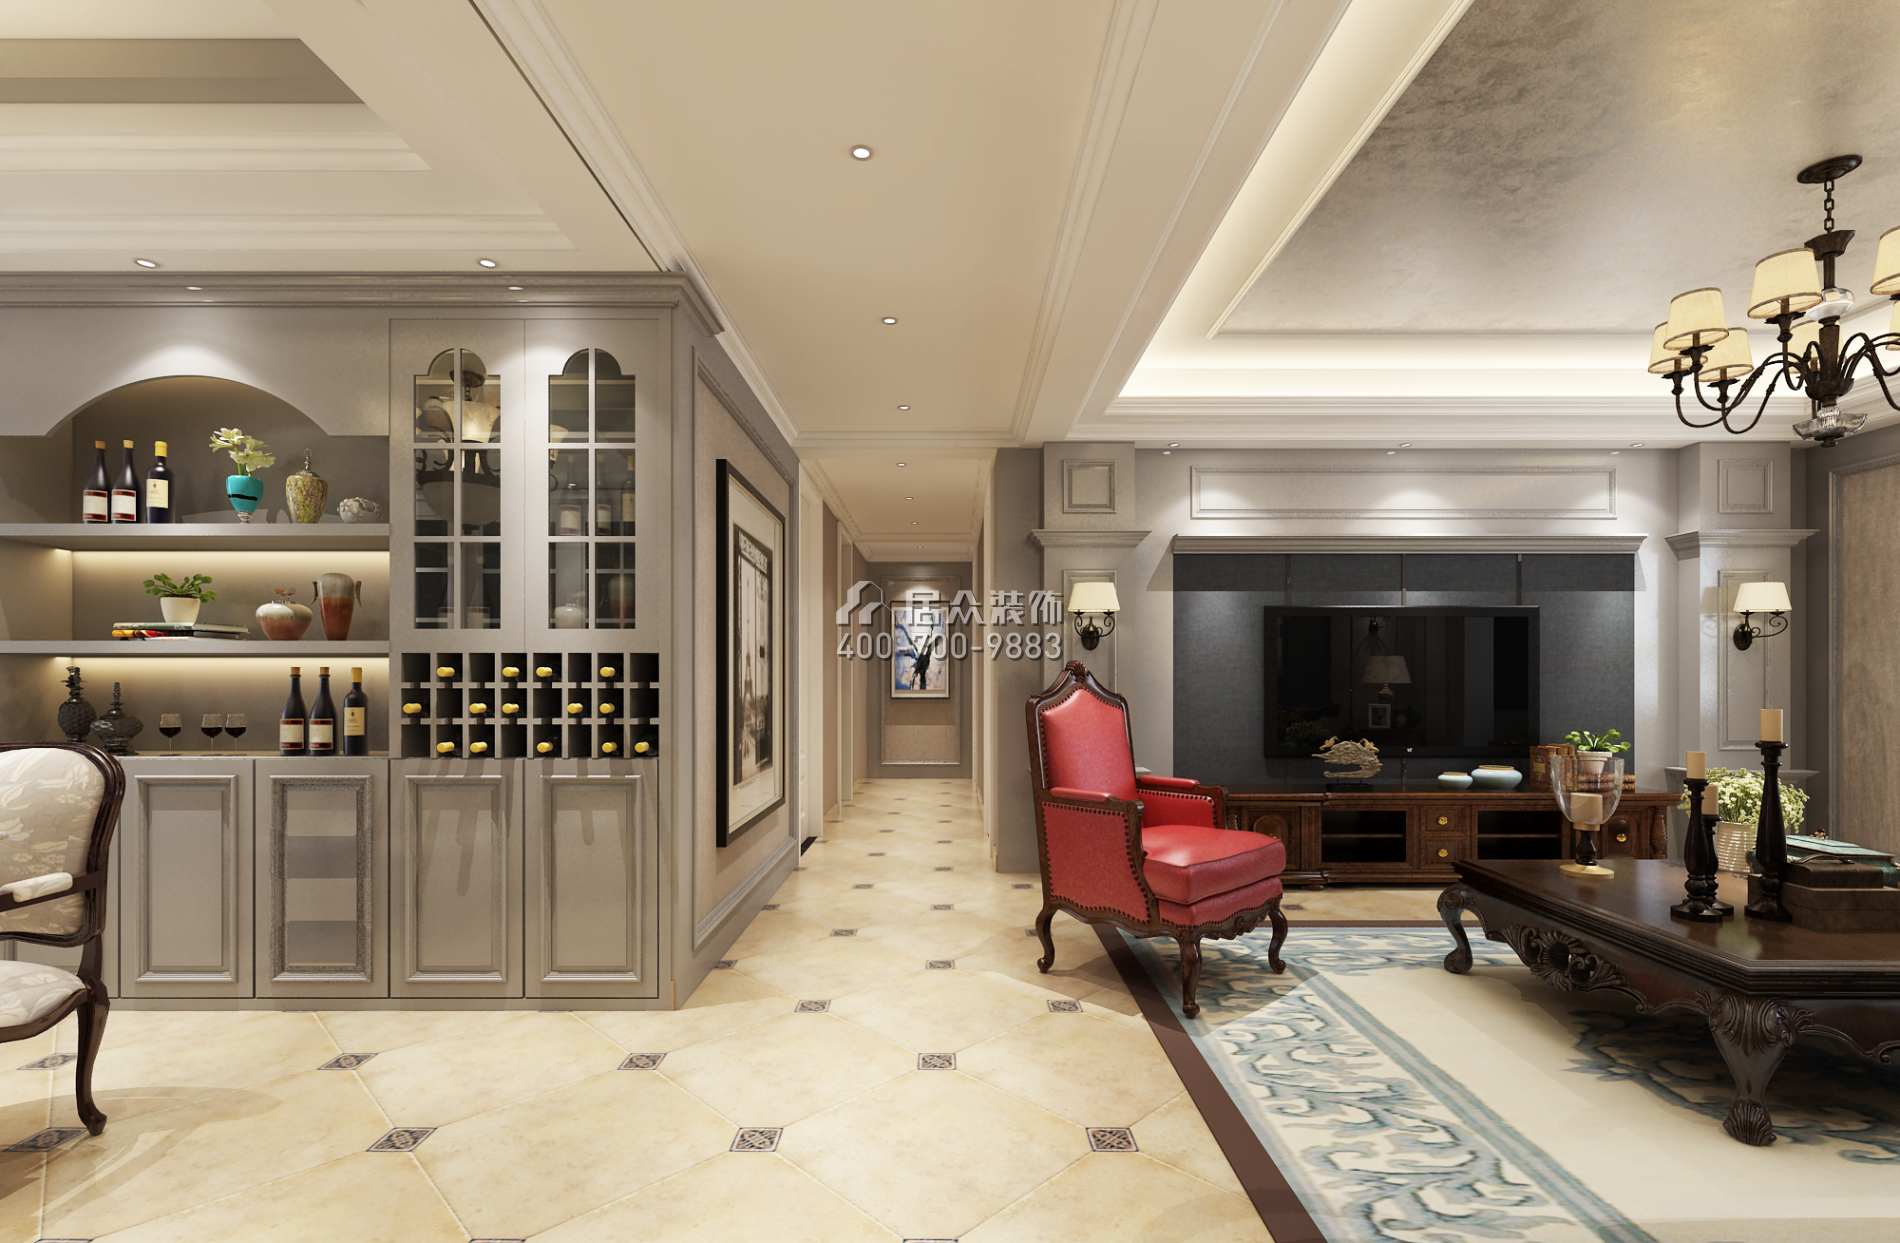 三一翡翠湾140平方米美式风格平层户型客厅装修效果图